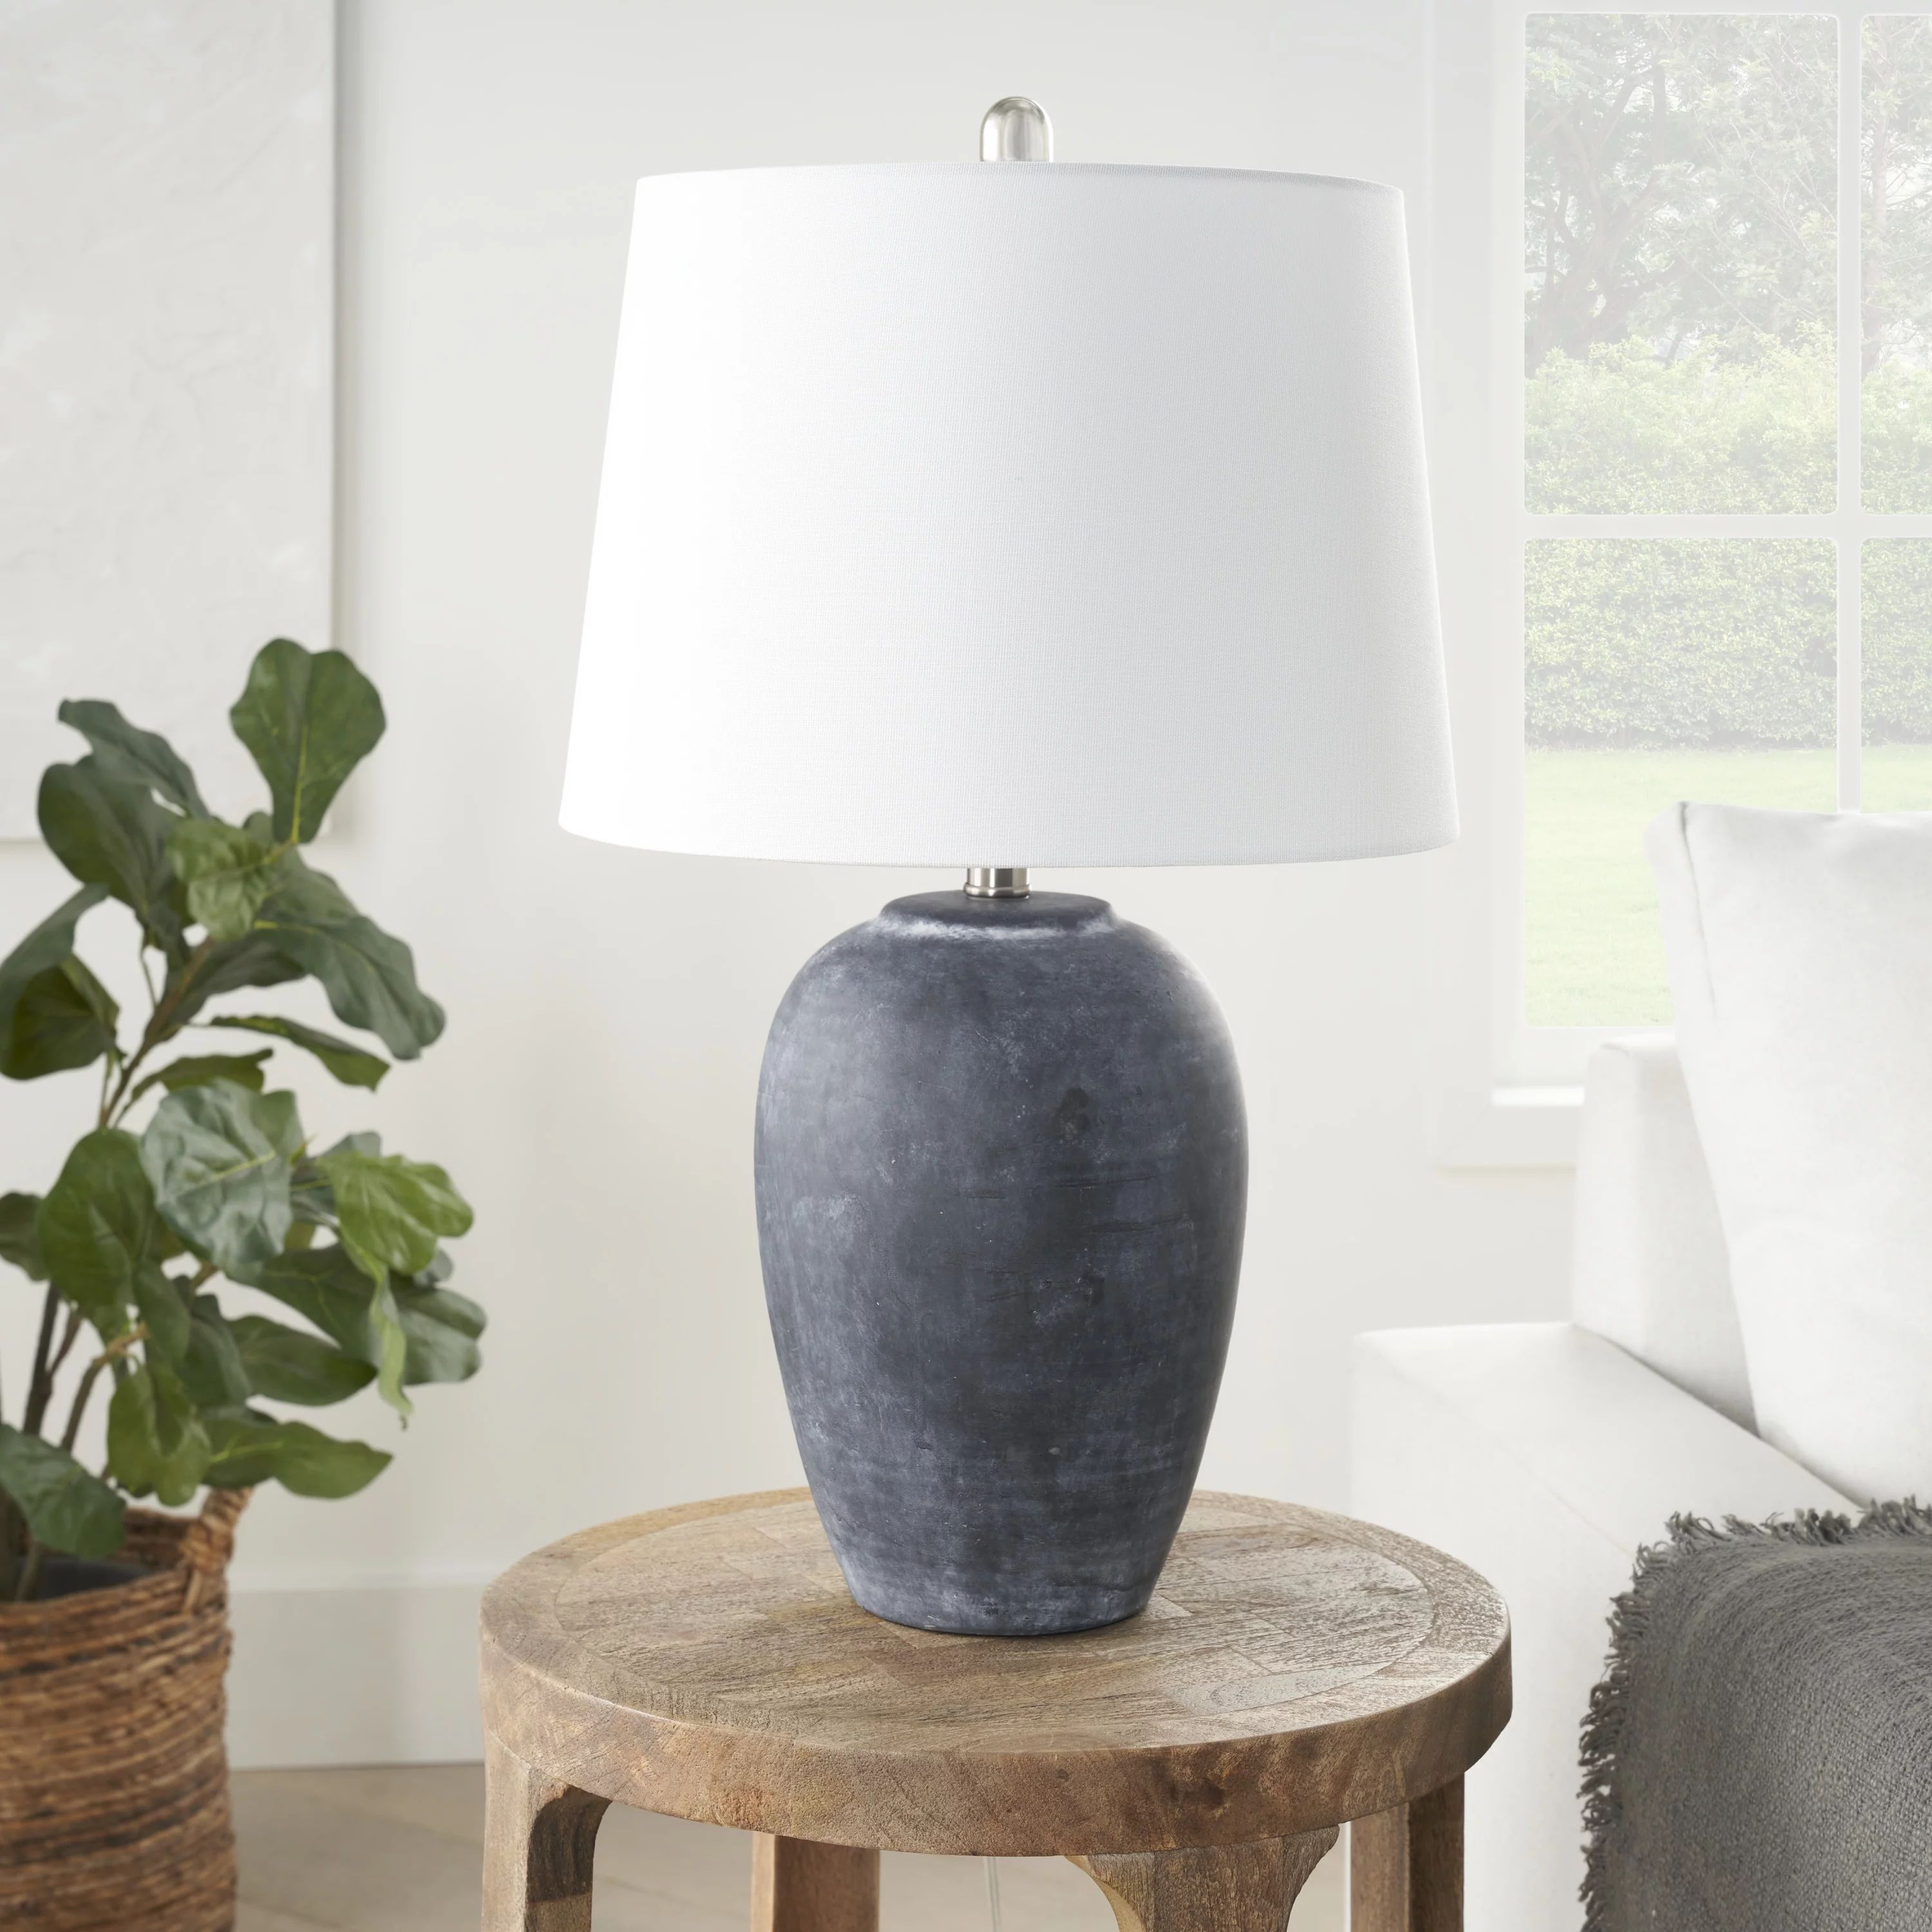 Nourison 23" Black Distressed Ceramic Urn Lamp for Bedroom, Living Room, Dining Room, Office | Walmart (US)